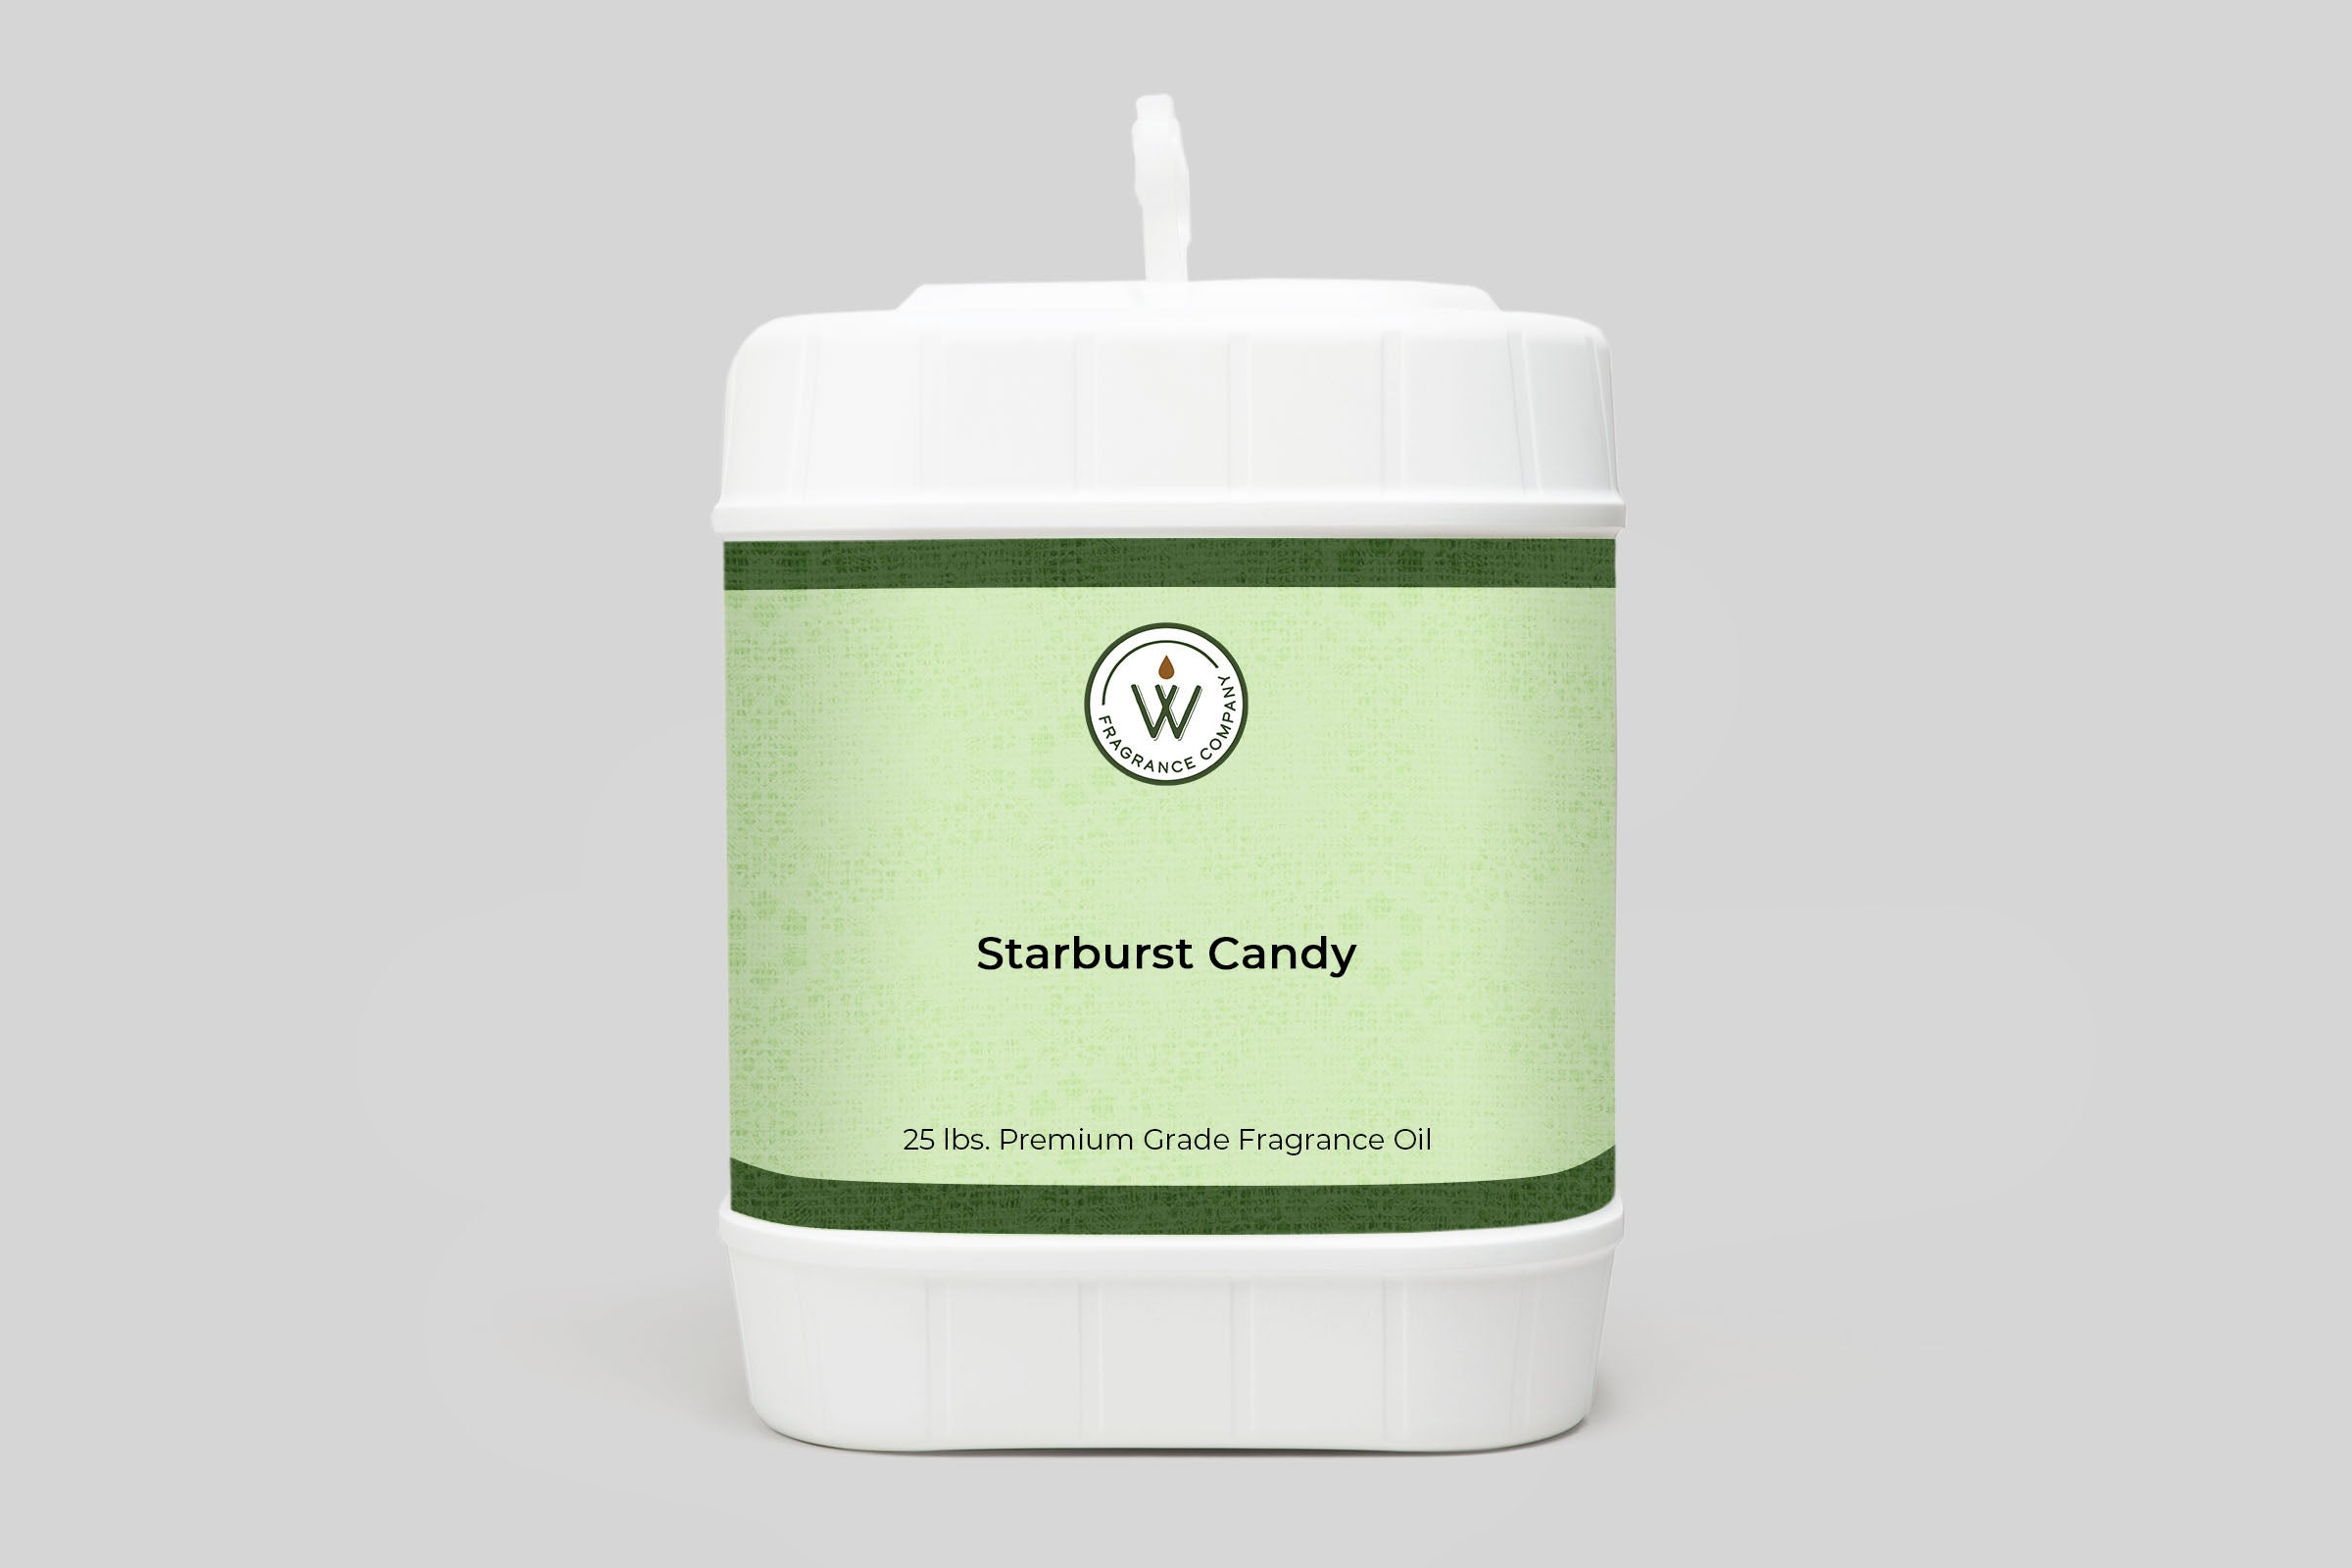 Starburst Candy Fragrance Oil